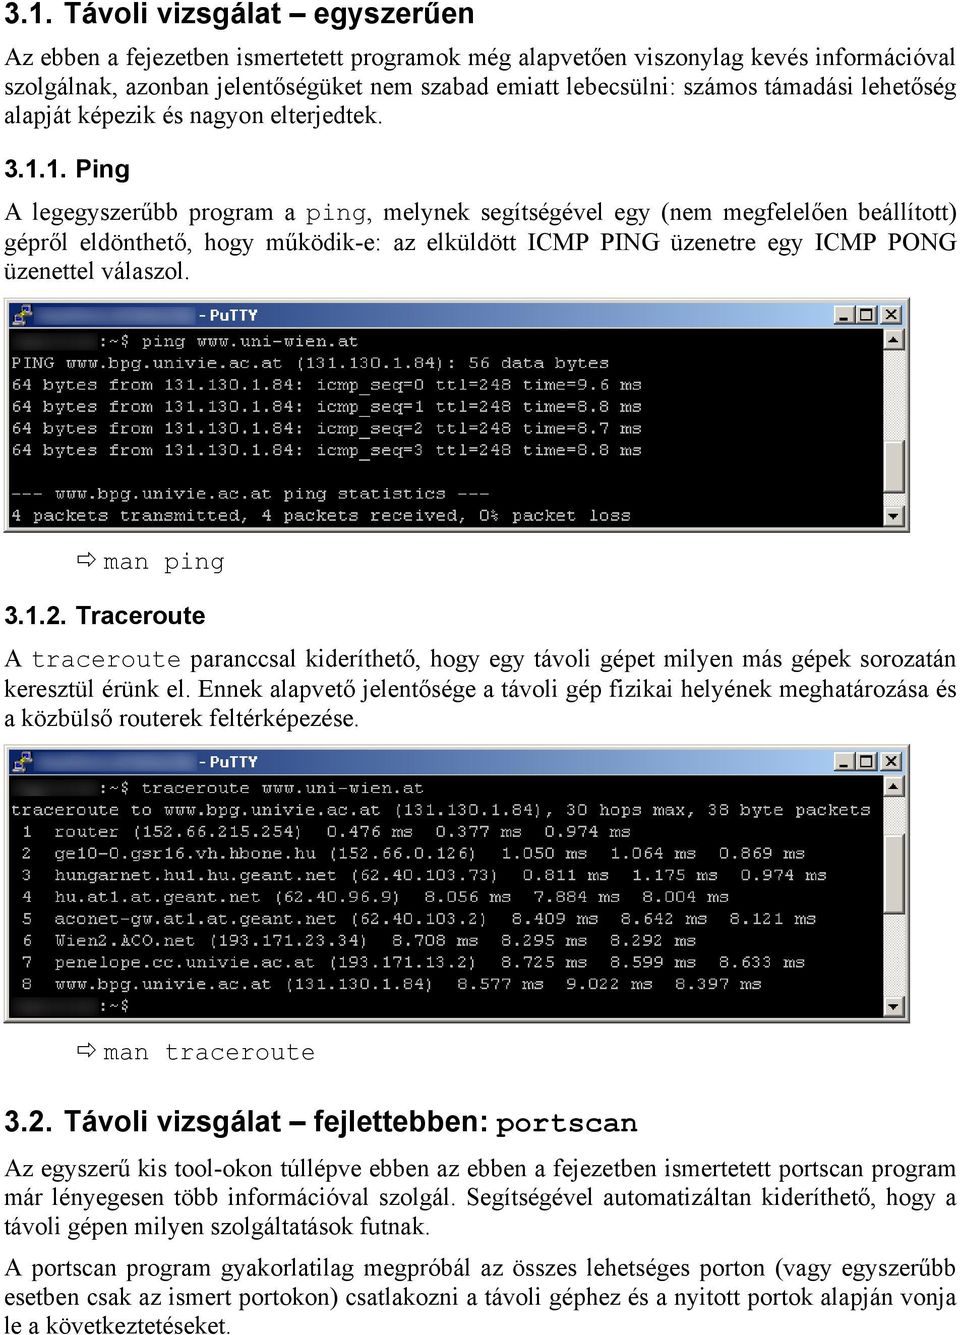 1. Ping A legegyszerűbb program a ping, melynek segítségével egy (nem megfelelően beállított) gépről eldönthető, hogy működik-e: az elküldött ICMP PING üzenetre egy ICMP PONG üzenettel válaszol.